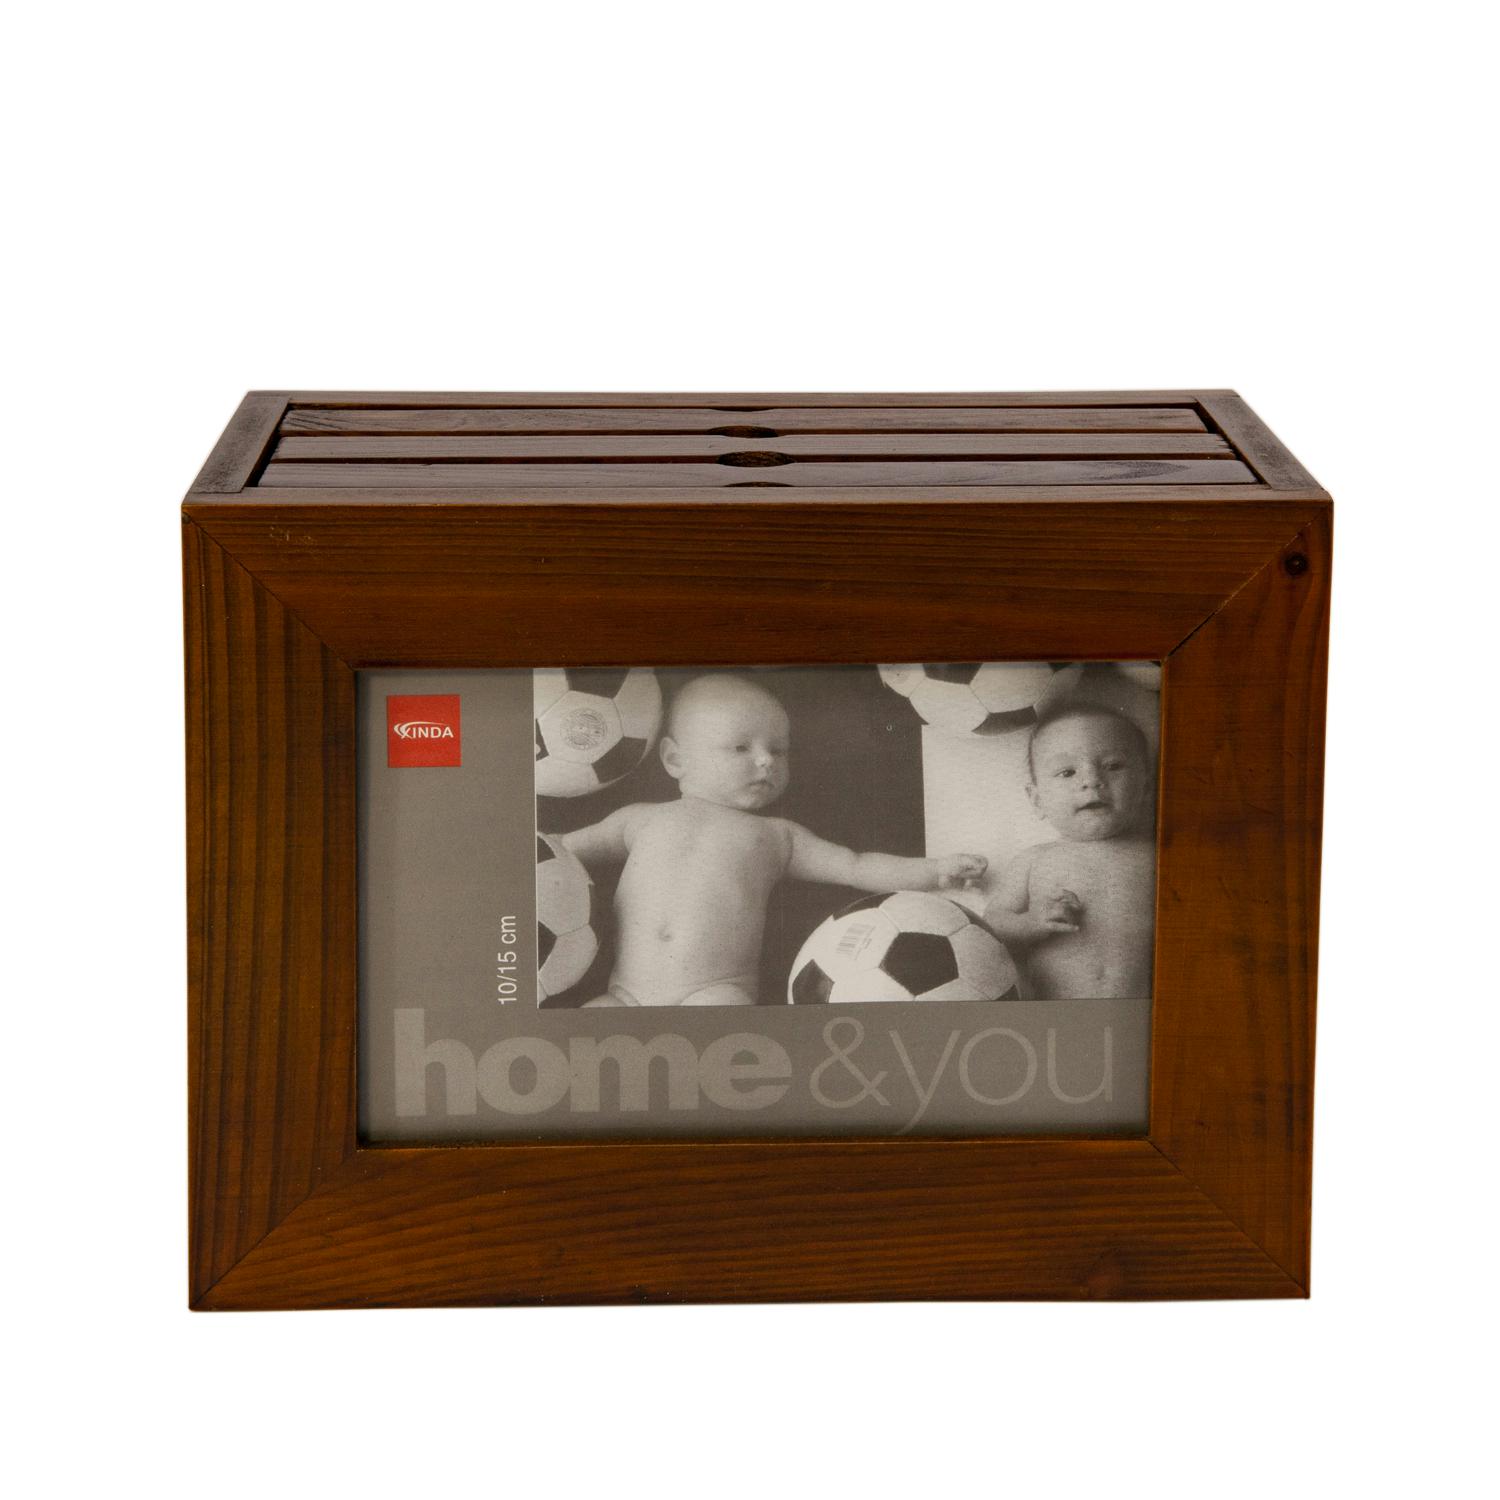 פוטו בוקס – מארז תמונות מעץ לקטלוג ודפדוף.
מידות: 19x8.5 ס”מ.